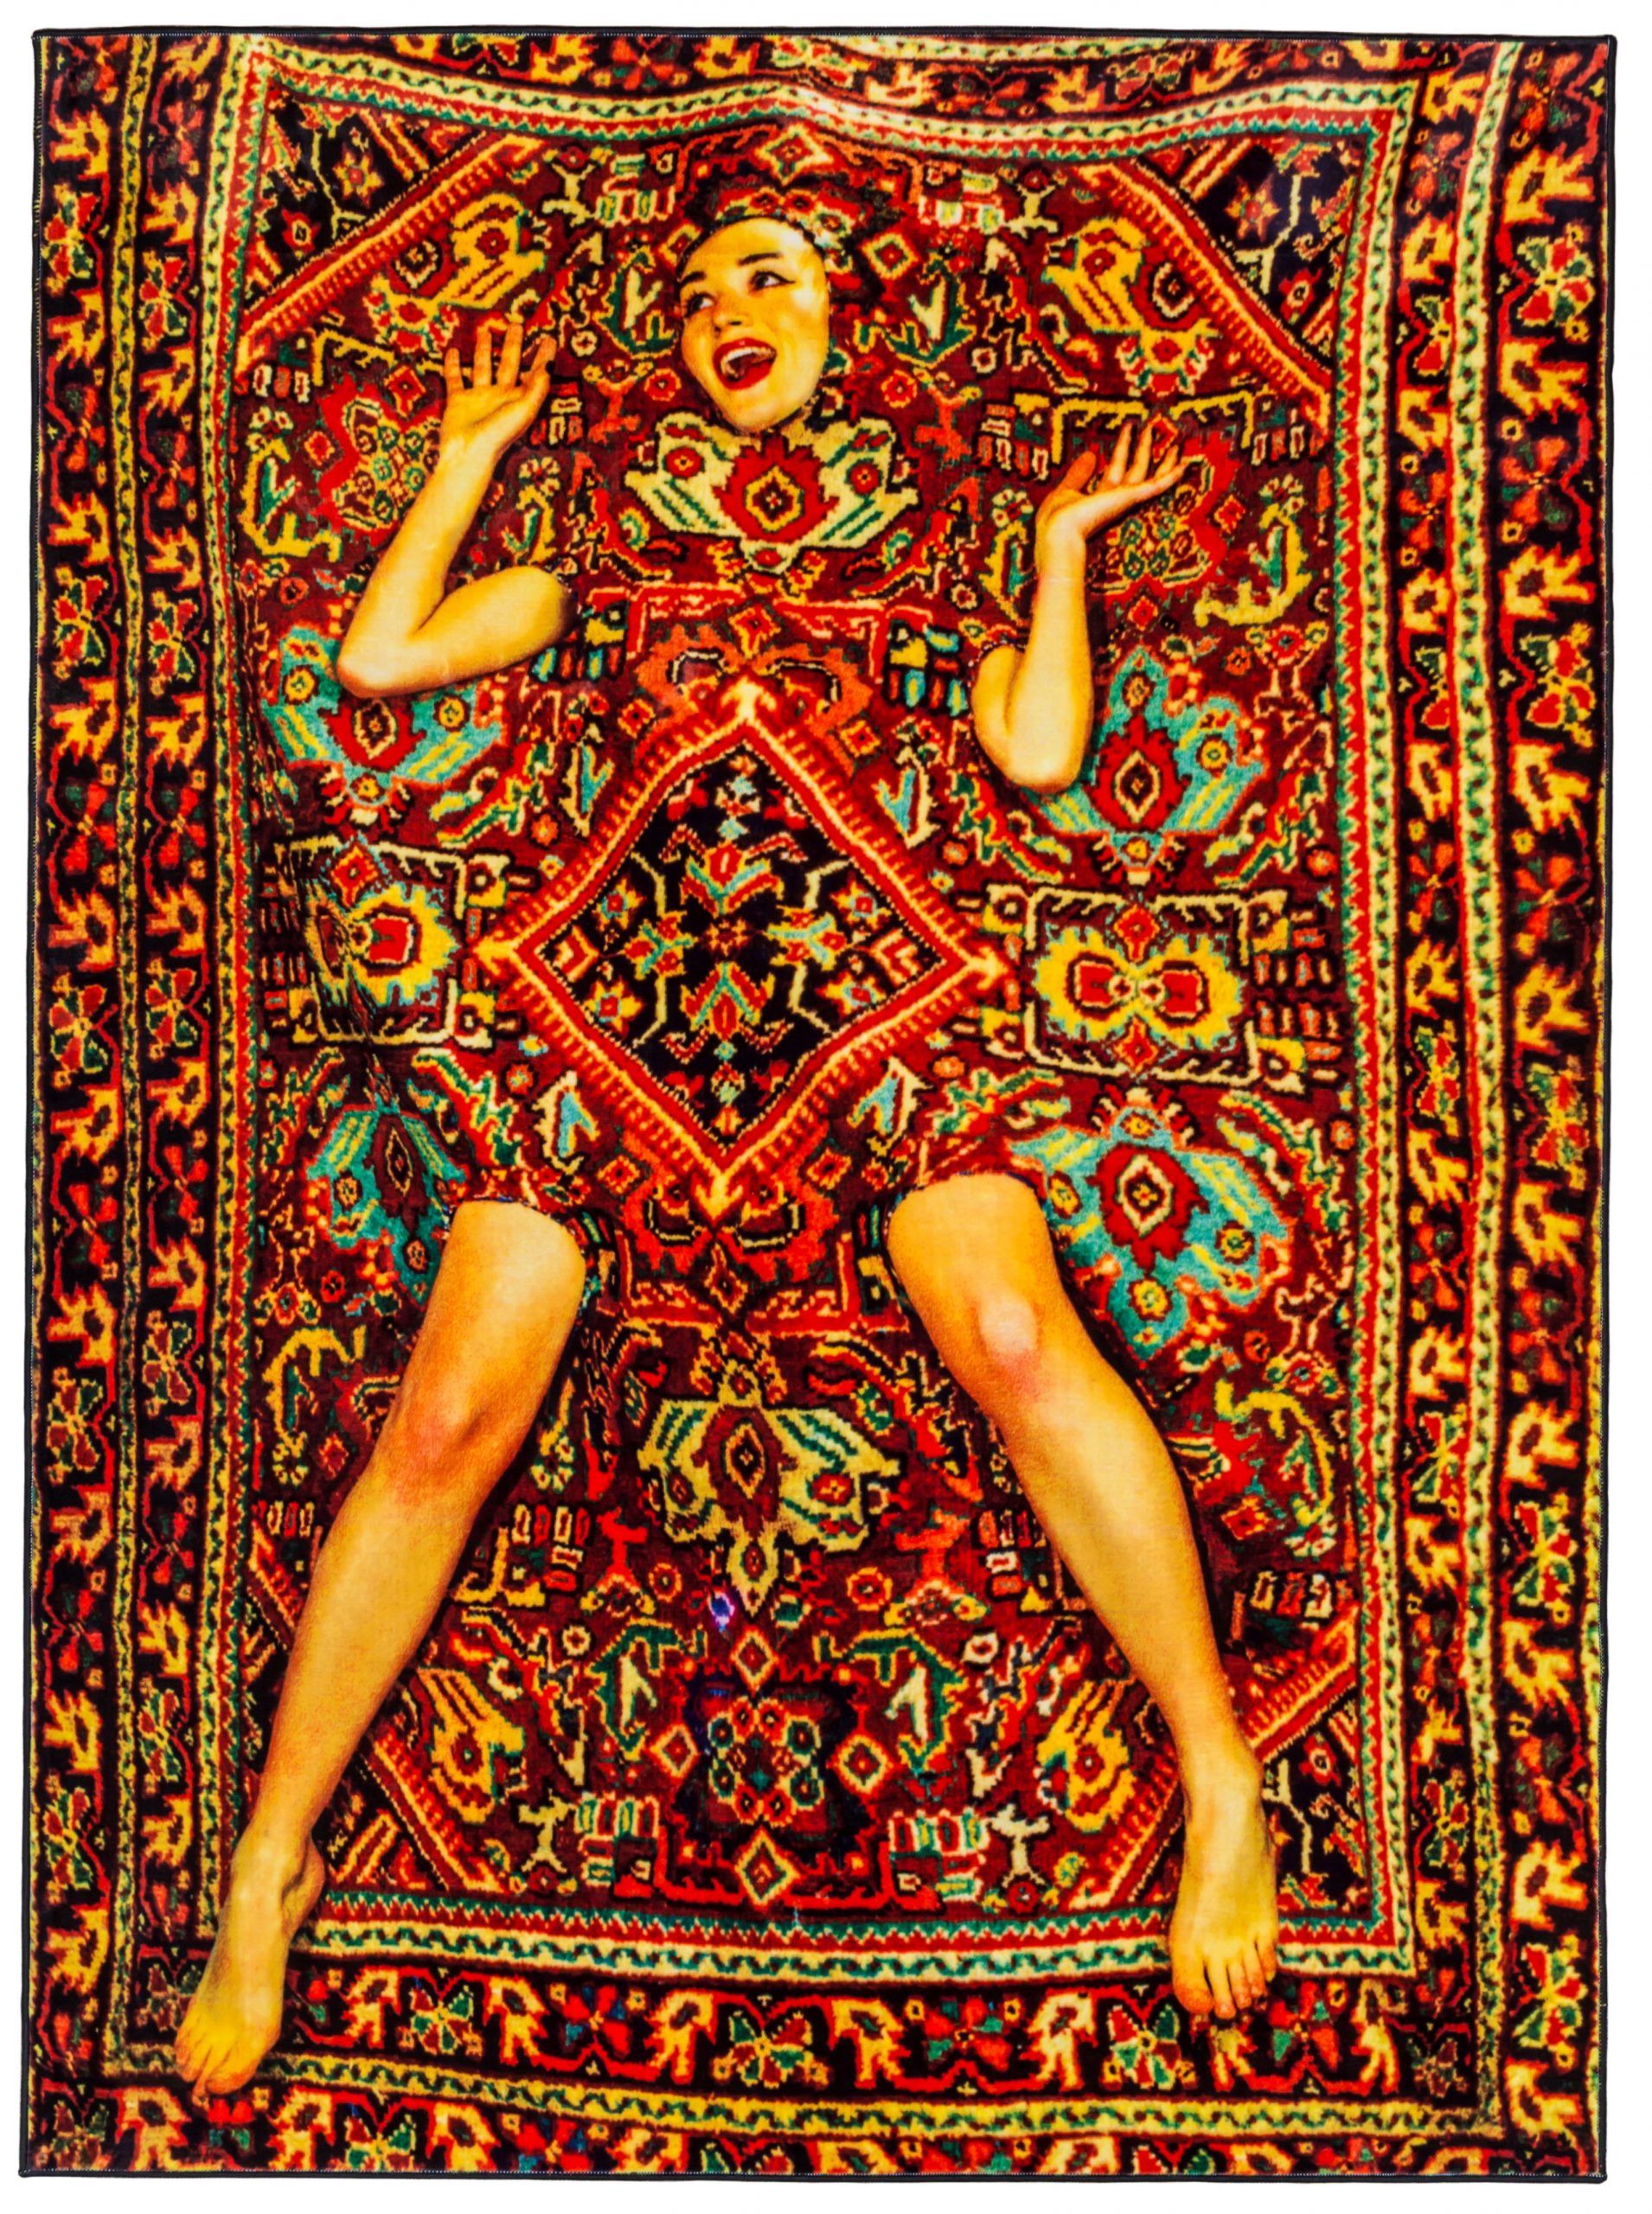 トイレットペーパーカーペット-Ladyon Carpet-194 x 280cmマルチカラー 